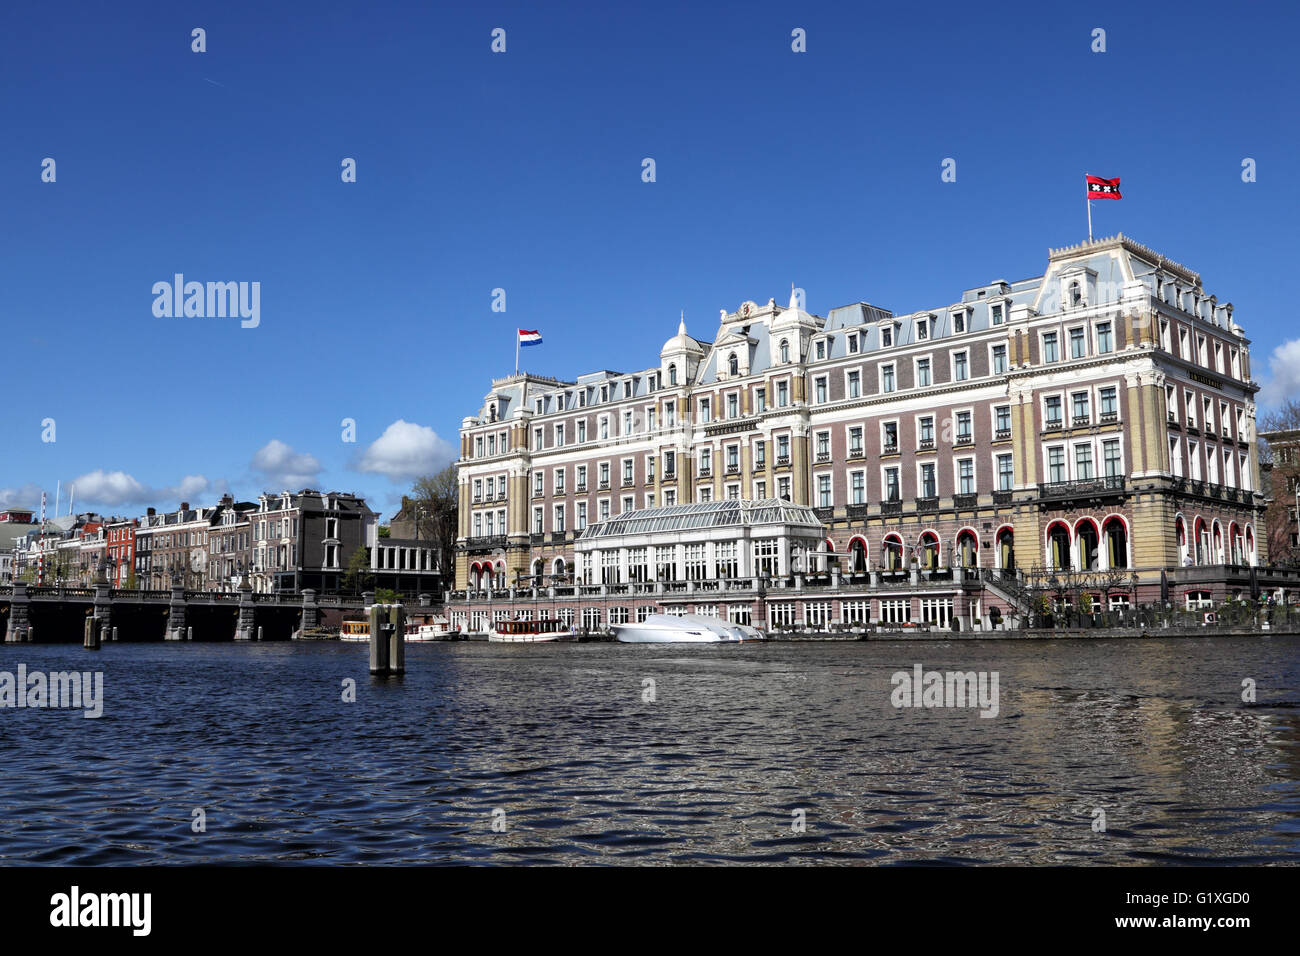 L'Hôtel Intercontinental Amstel Hotel au bord de la rivière Amstel dans le centre-ville d'Amsterdam, Pays-Bas, Europe. Banque D'Images